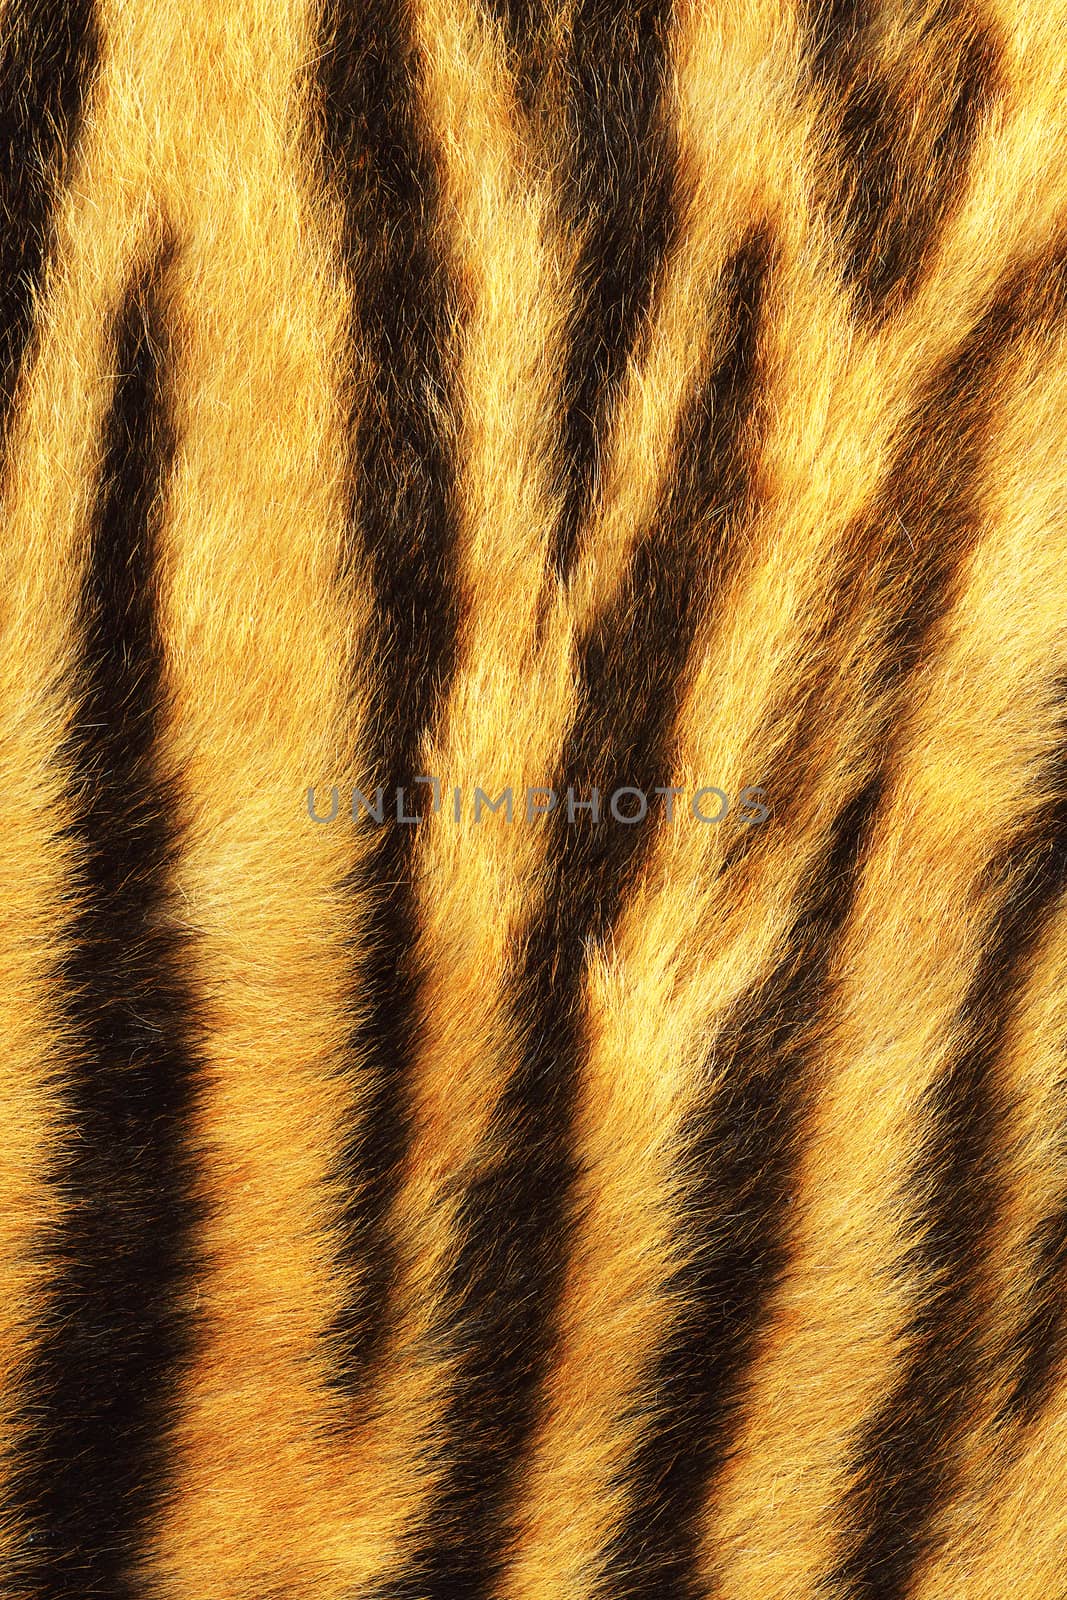 detailed tiger stripes fur, real animal pelt